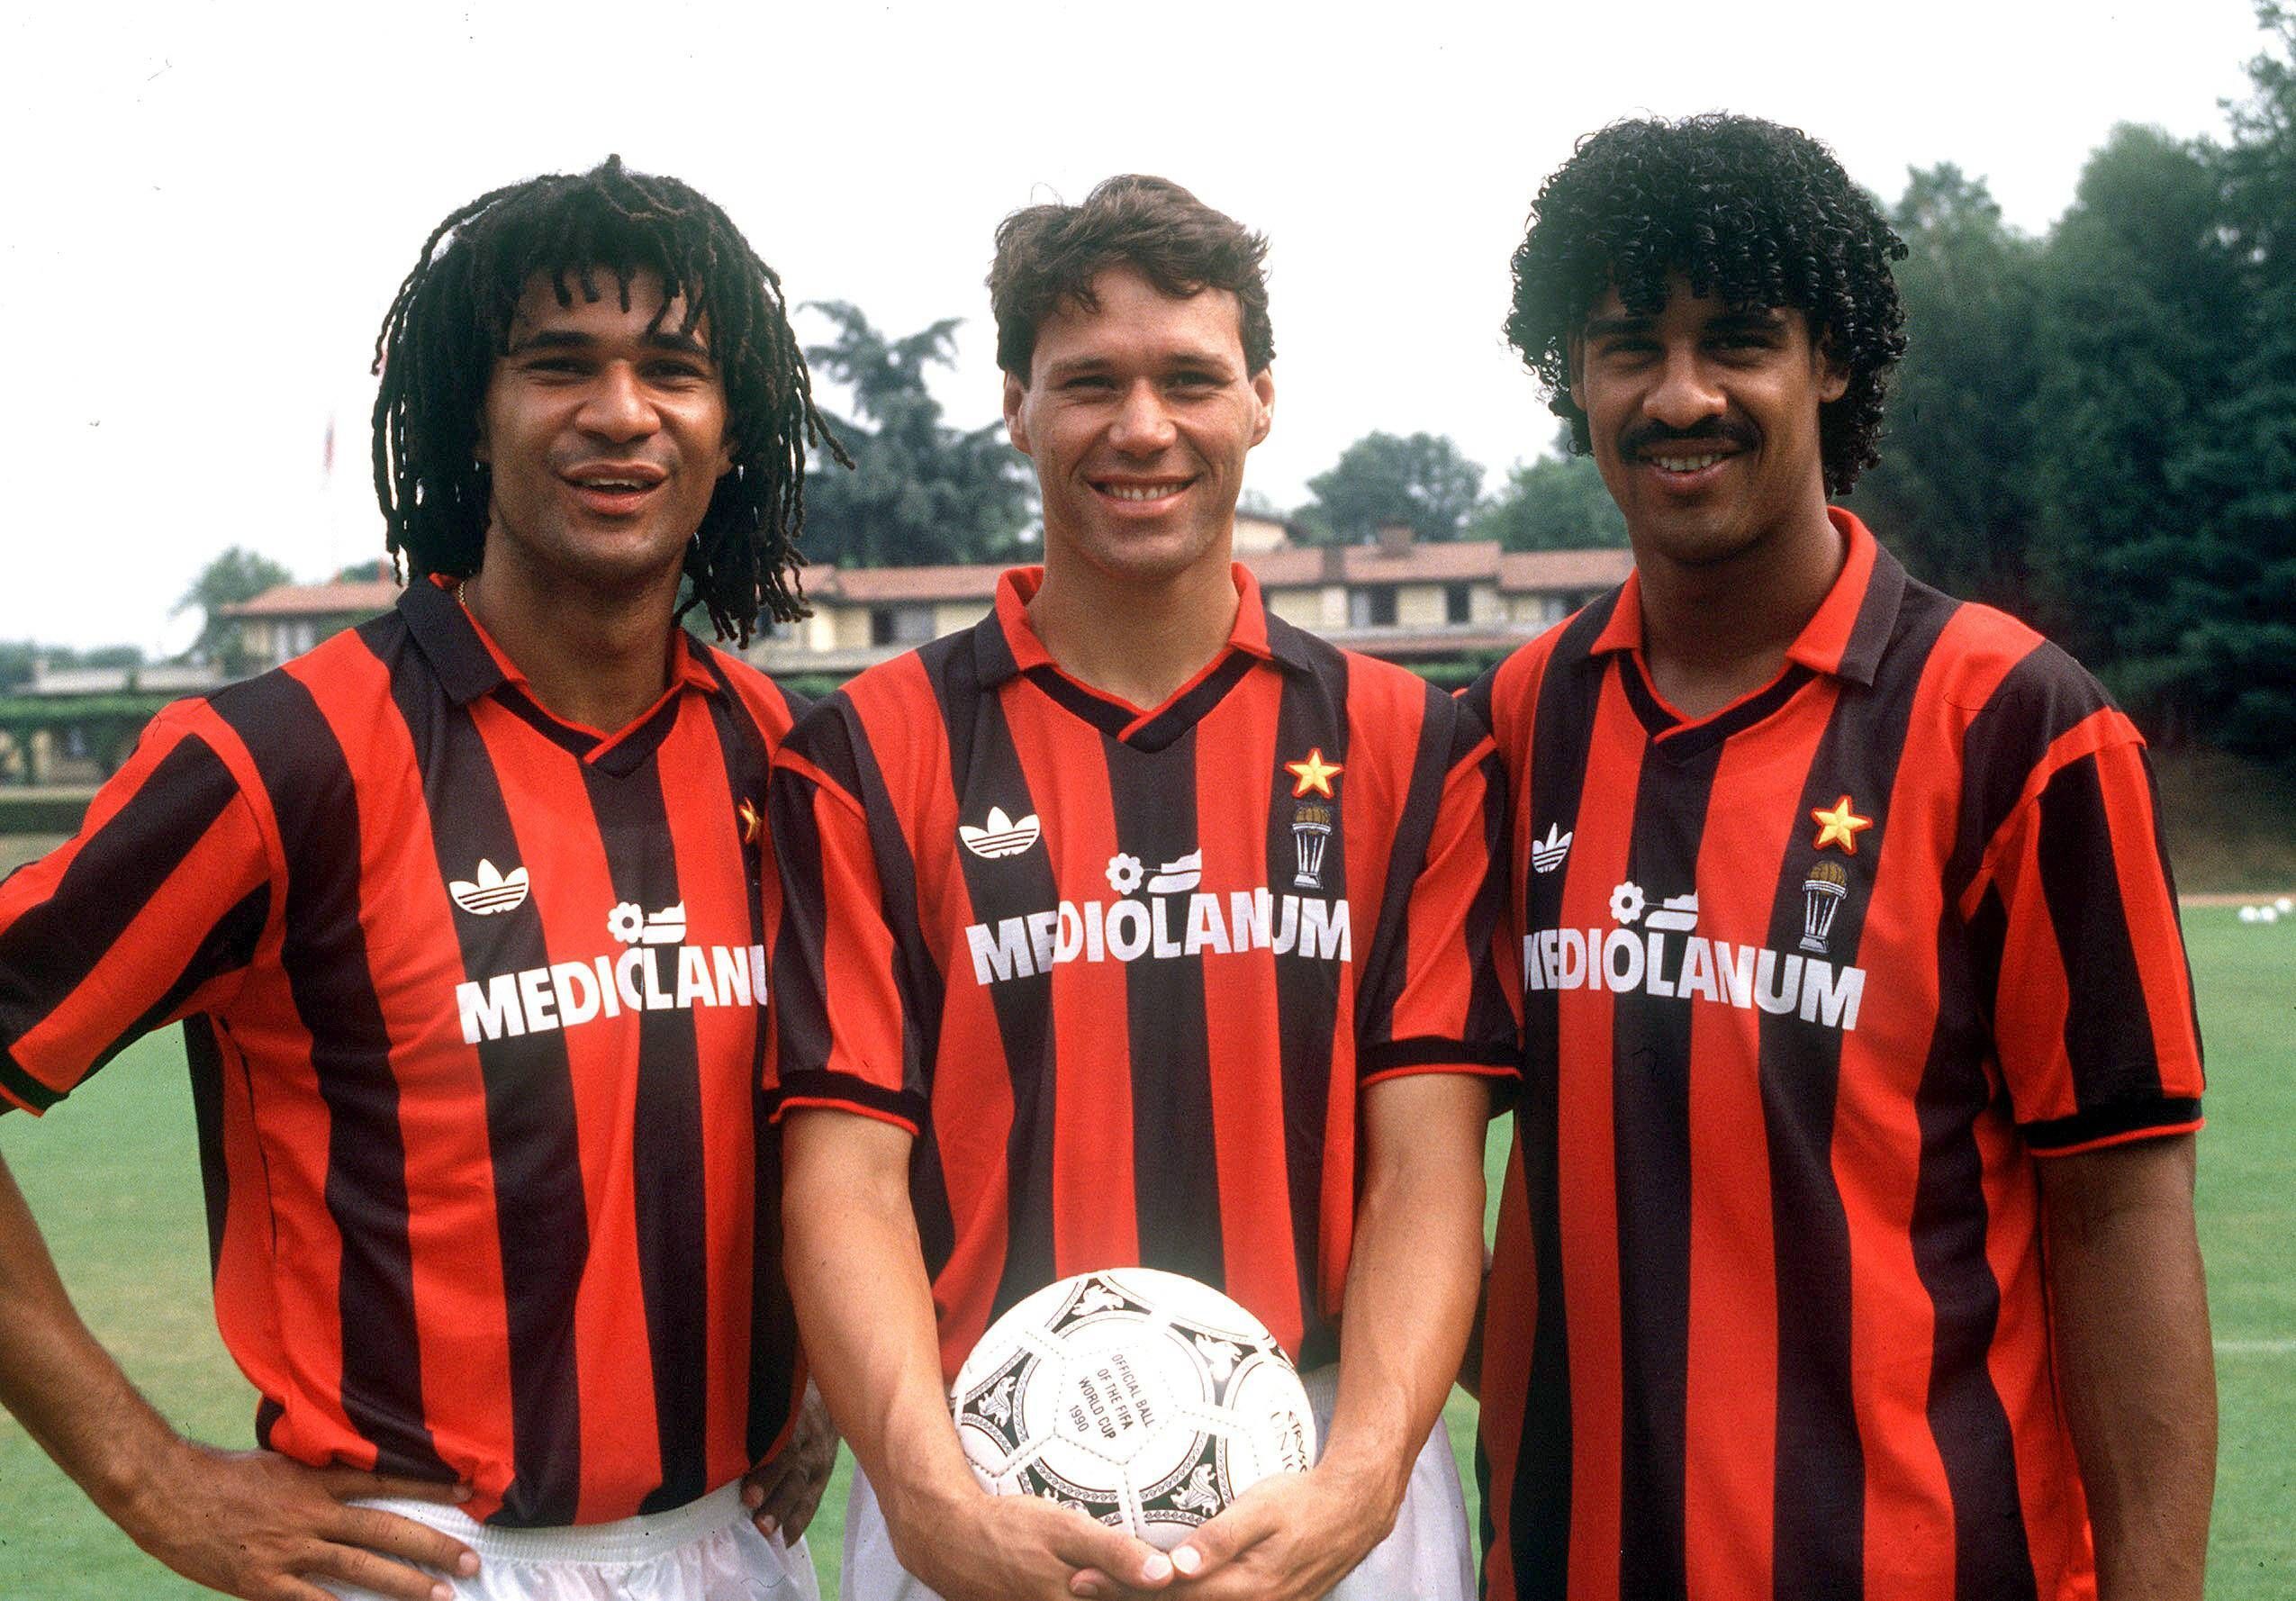 
                <strong>Italien: AC Mailand 1991/92 </strong><br>
                Auch Dank ihrer drei niederländischen Superstars Ruud Gullit, Marco van Basten und Frank Rijkaard (von links) schafften die Rossoneri in der Saison 1991/92 den souveränen Durchmarsch in der Serie A. Am Saisonende war das Team von Fabio Capello mit 22 Siegen und zwölf Unentschieden italienischer Meister vor Juventus Turin.
              